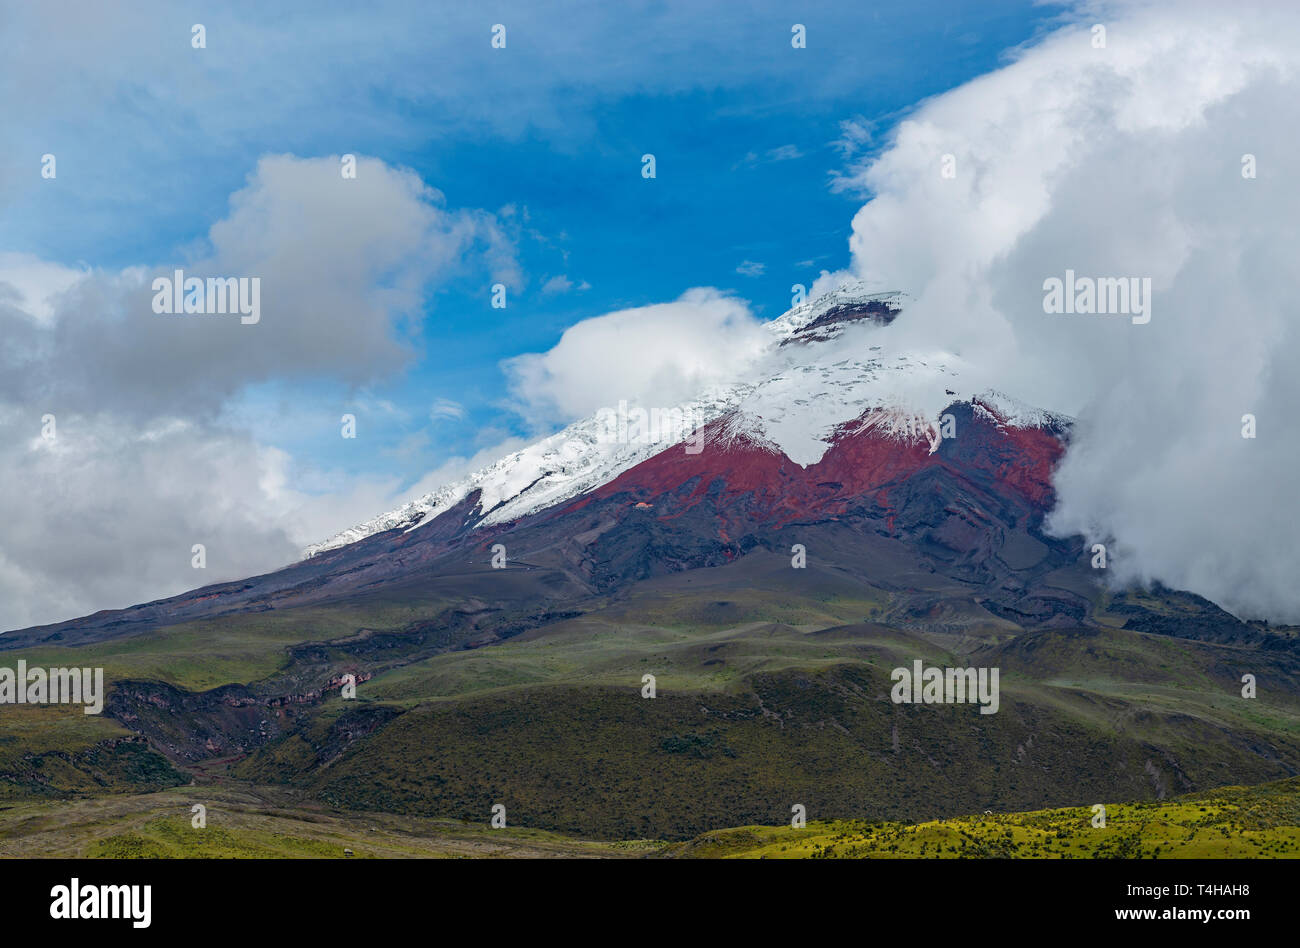 El volcán Cotopaxi saliendo del páramo de gran altitud en el ecosistema con 5897 m de altura, cerca de la ciudad de Quito, Ecuador. Foto de stock